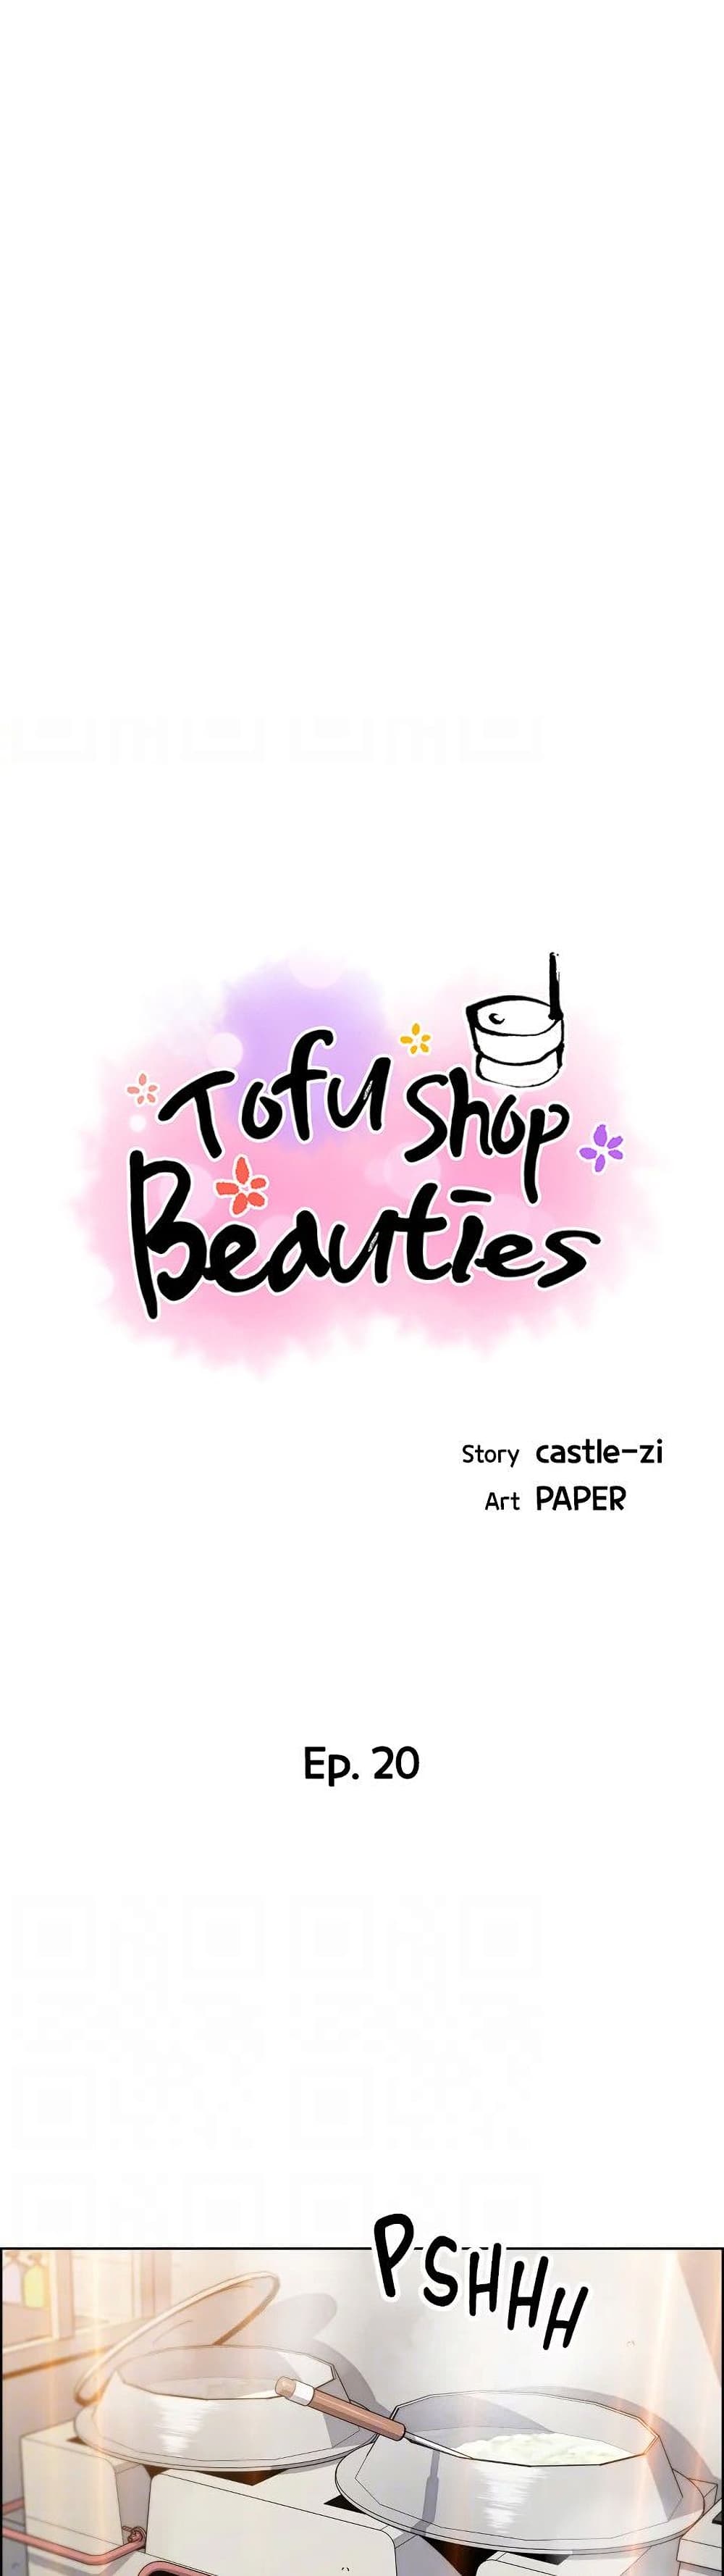 Tofu Shop Beauties 20 01